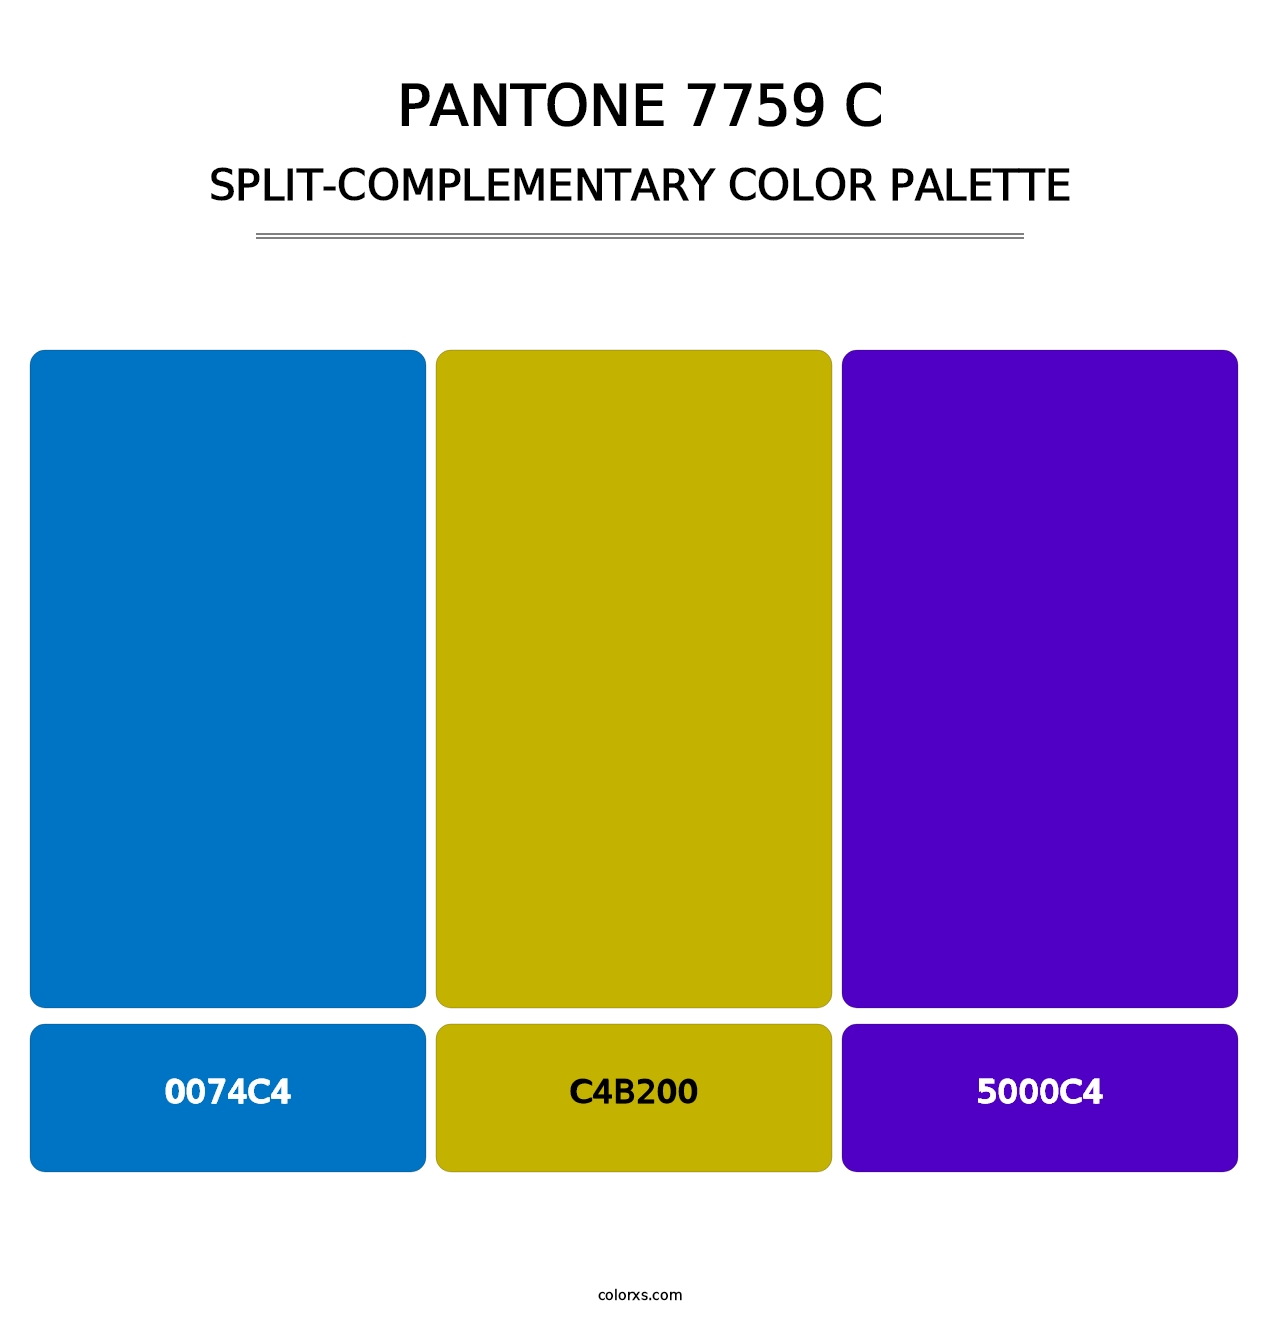 PANTONE 7759 C - Split-Complementary Color Palette